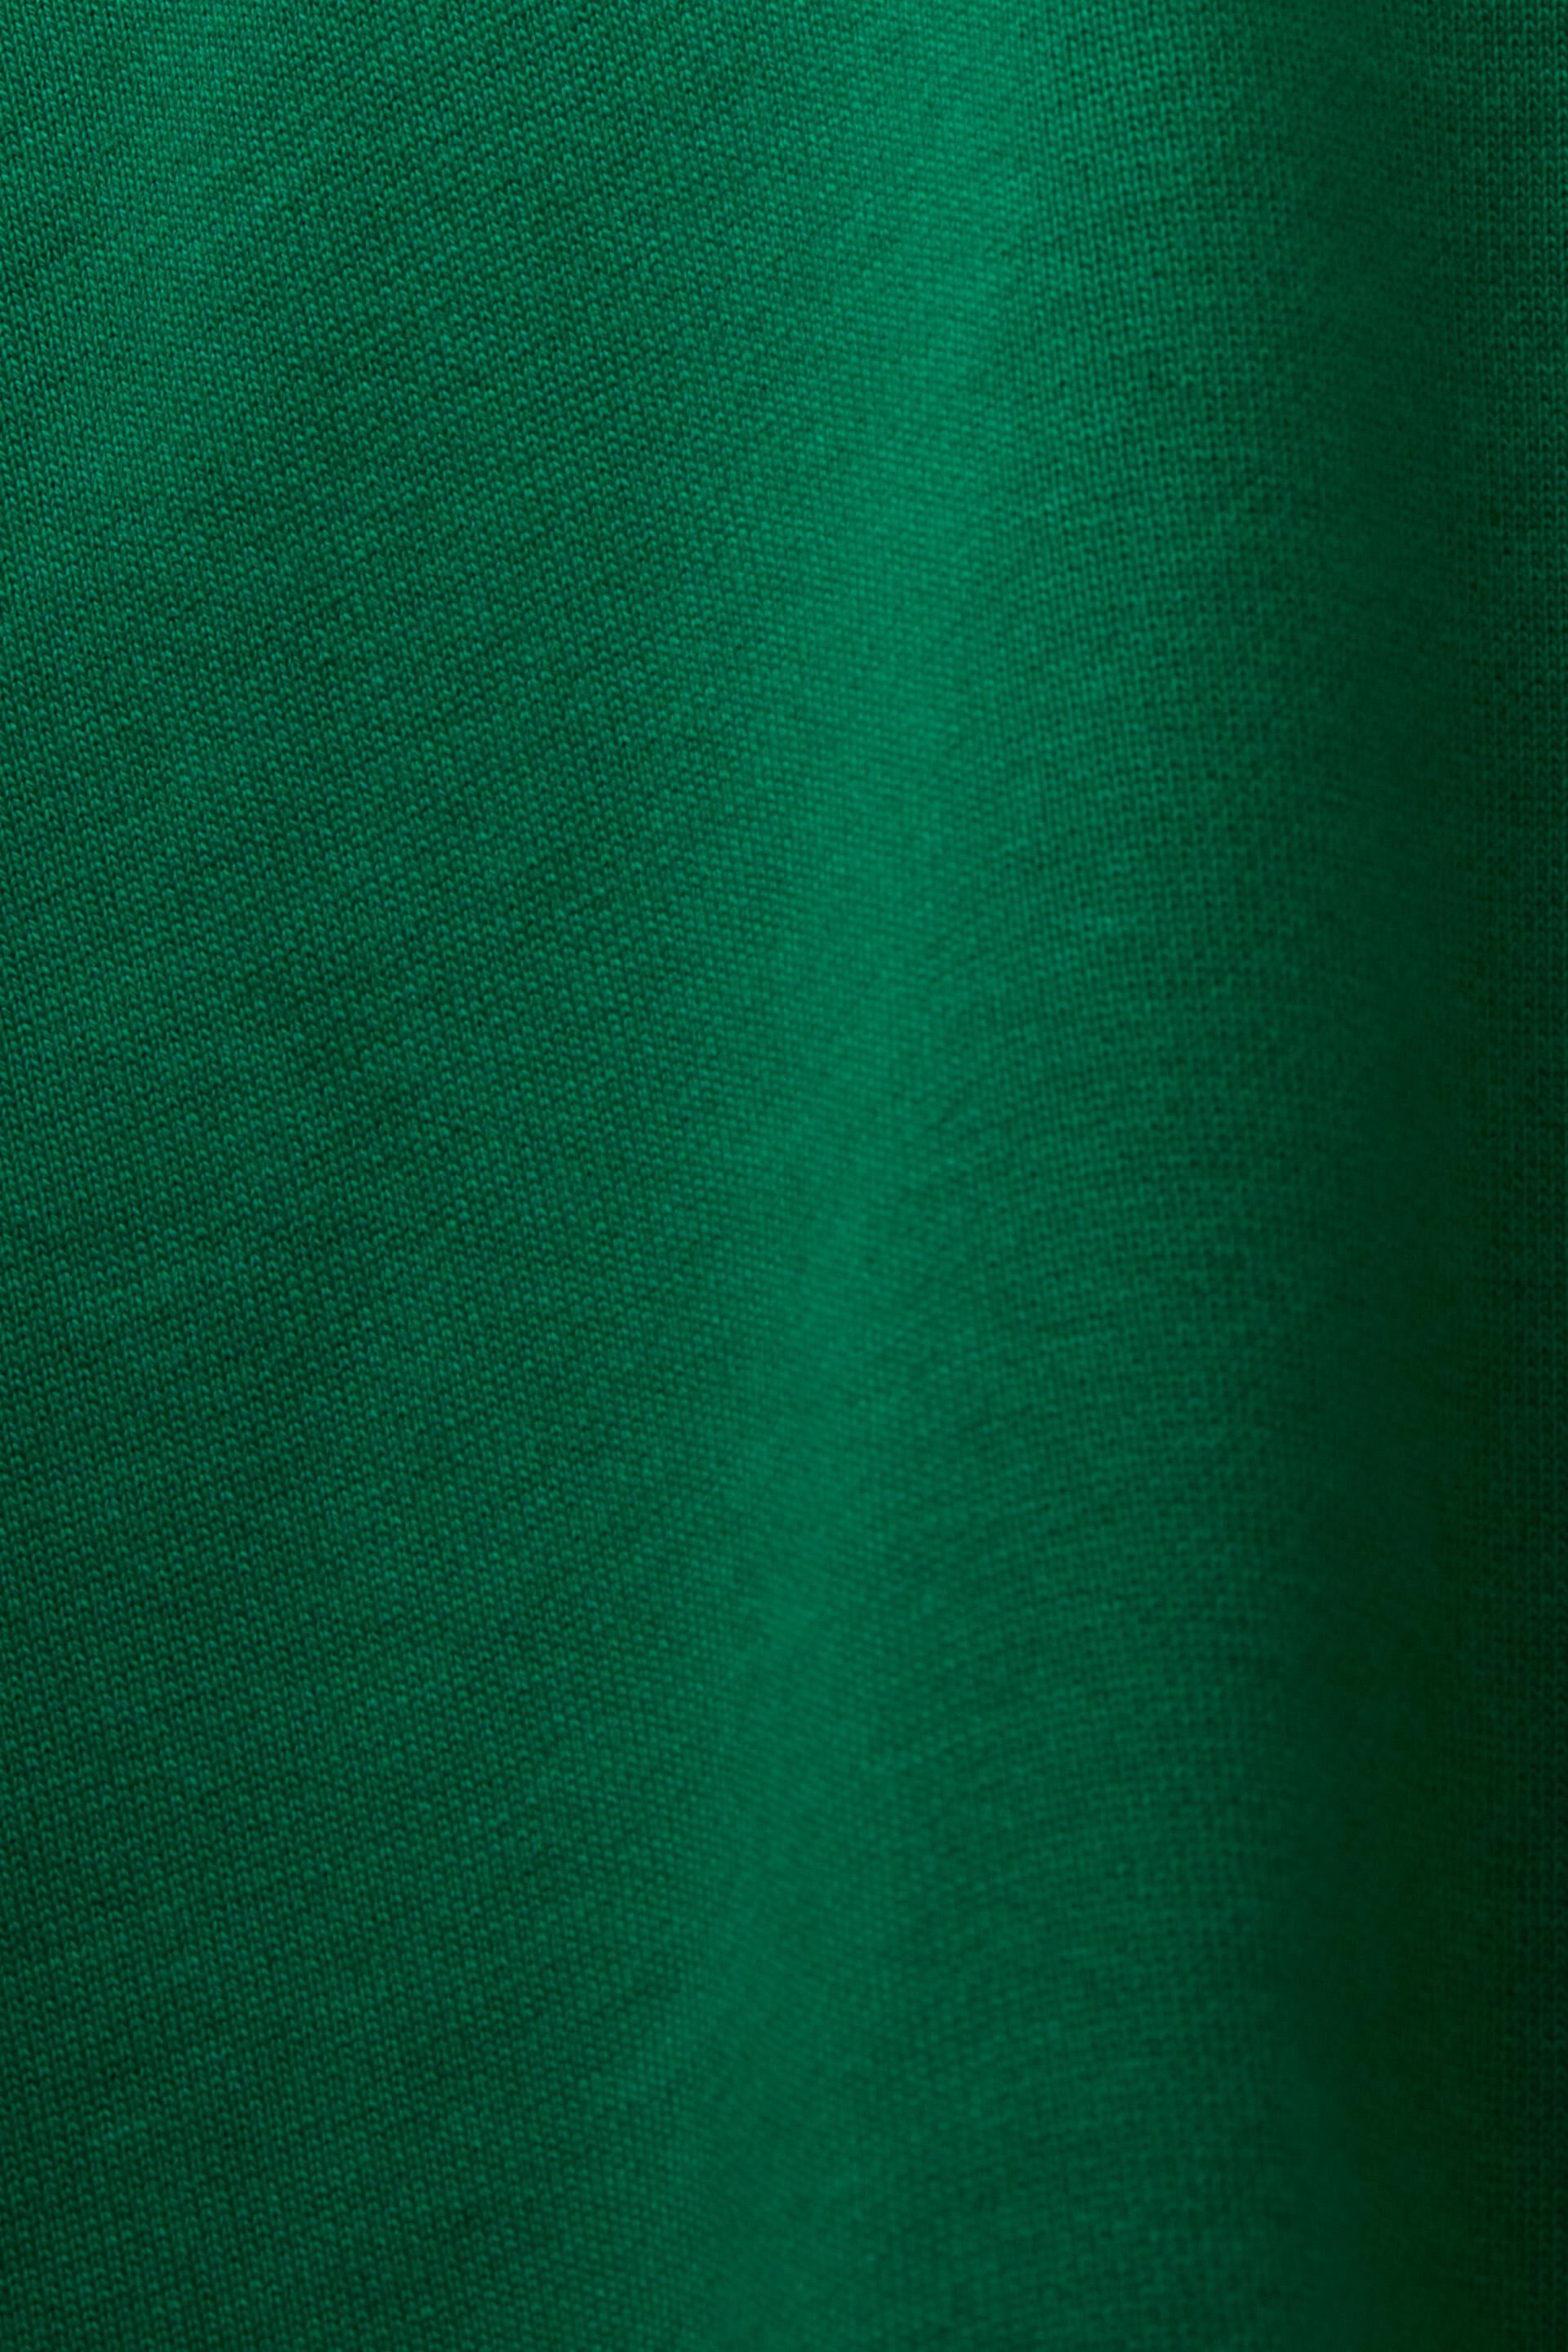 Esprit Logo, Bio-Baumwolle mit aufgesticktem Kapuzenpullover